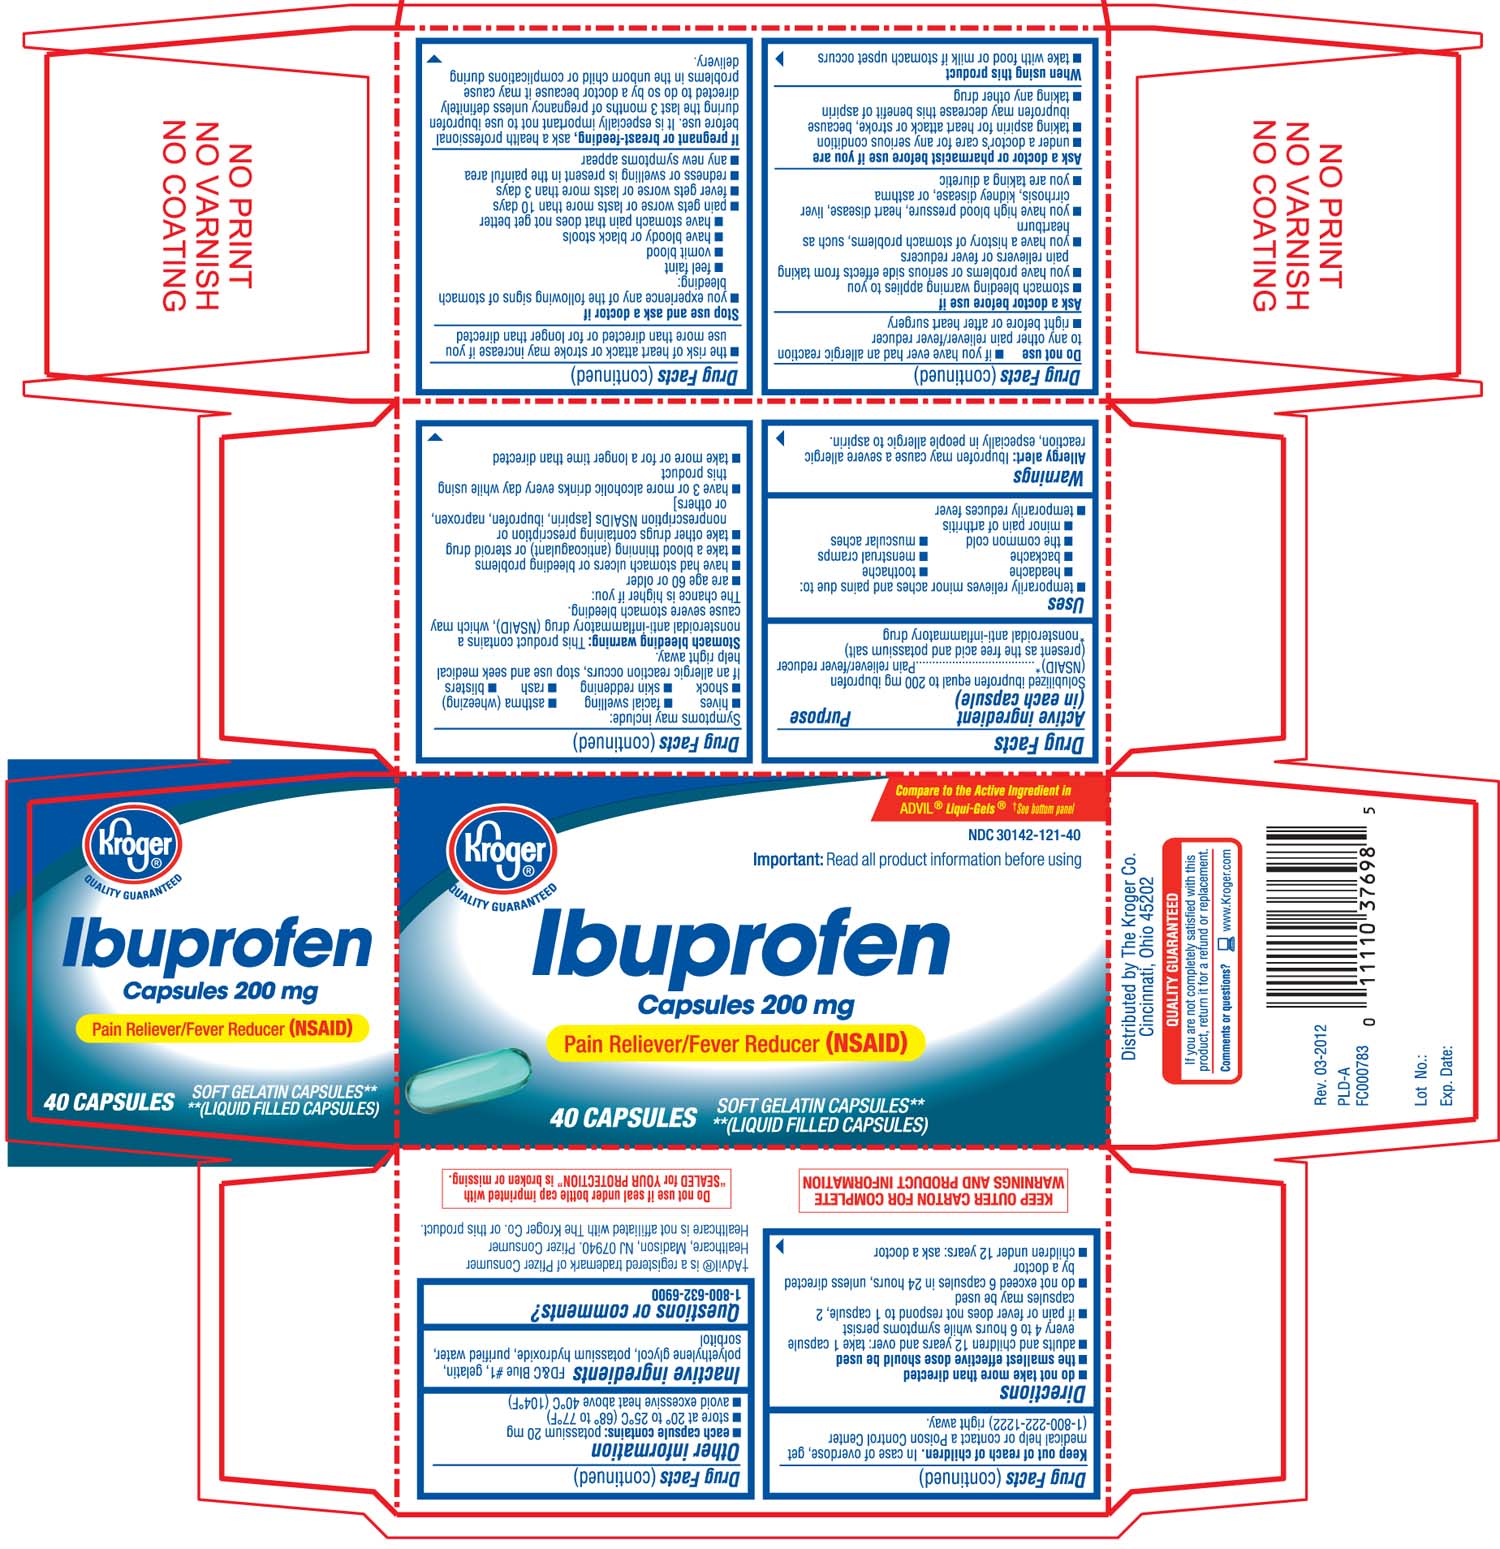 kroger ibuprofen capsules 40 count